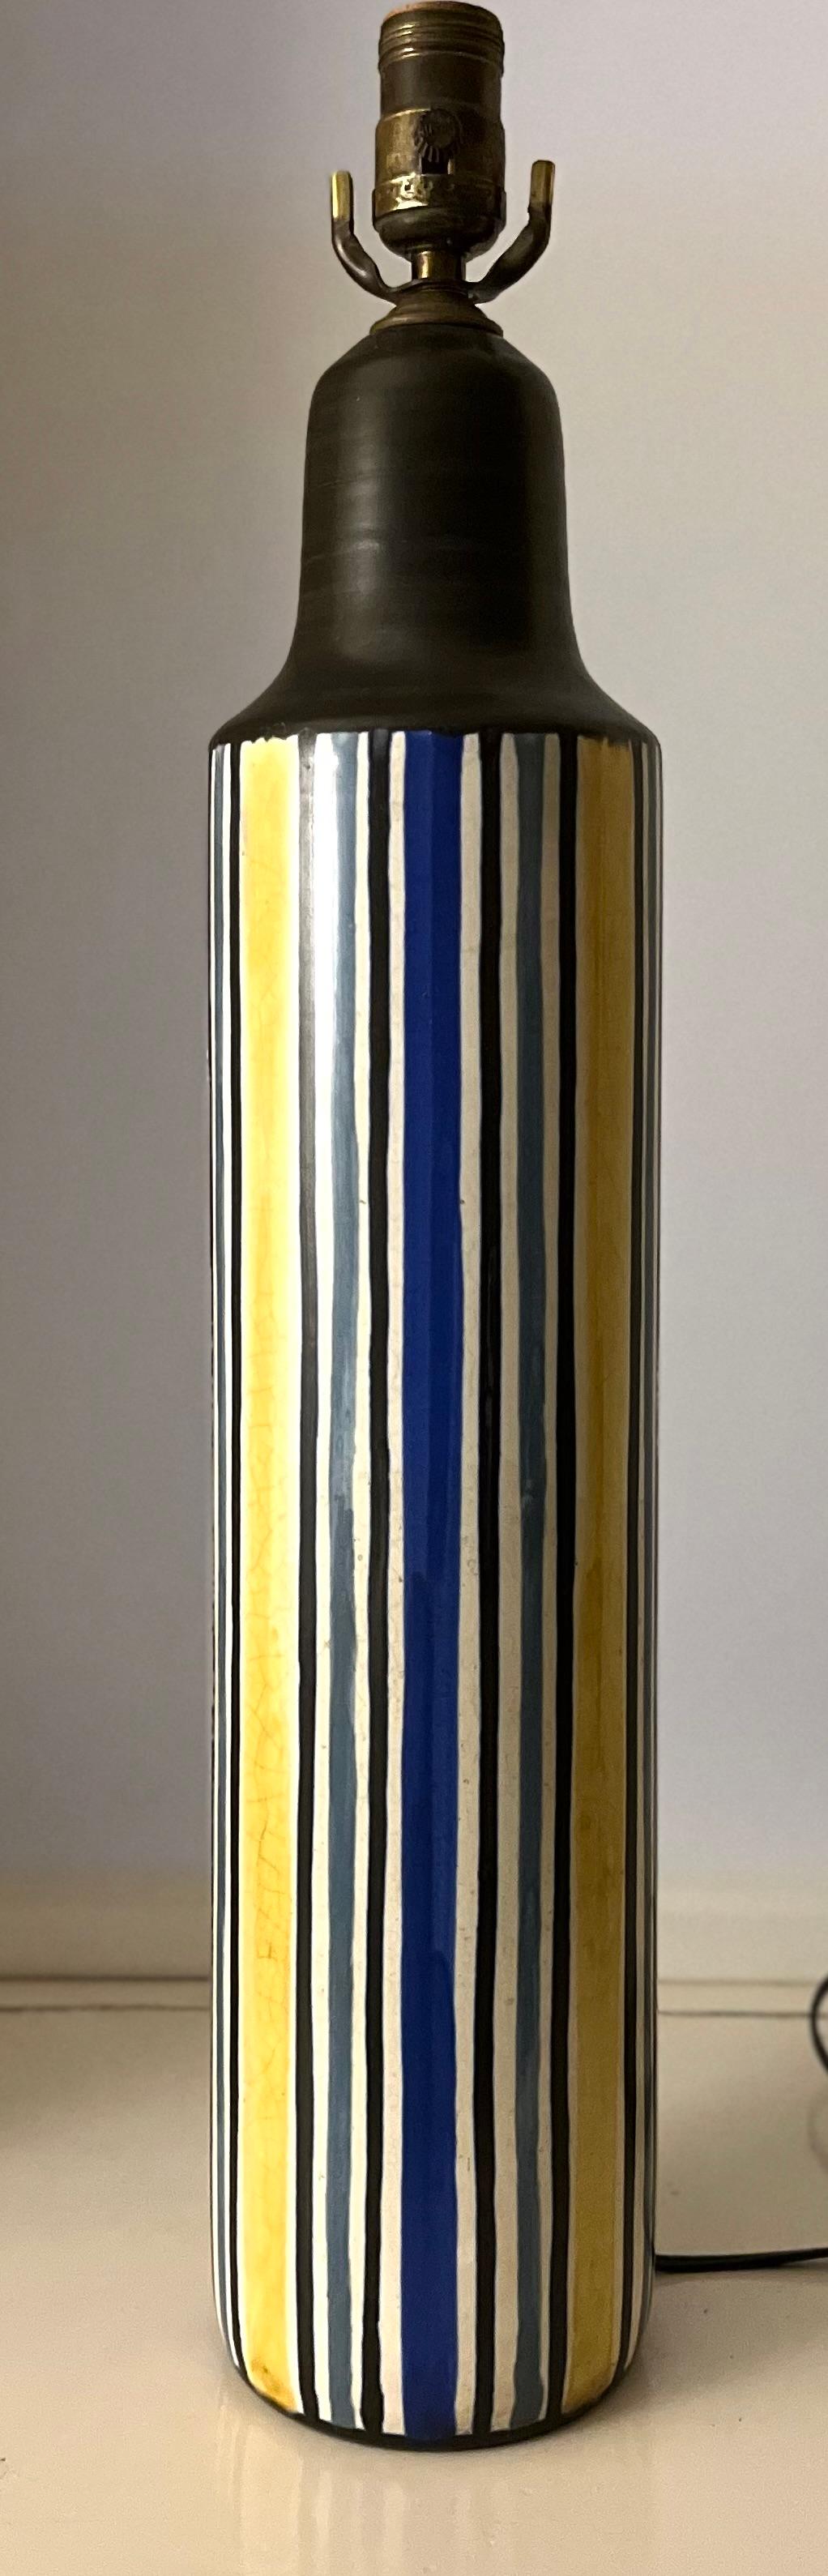 Rare lampe de table du milieu du 20e siècle en céramique de Lotte et Gunnar Bostlund, récemment recâblée, modèle #302. Fond blanc avec des rayures jaunes, bleues et grises. Signé 